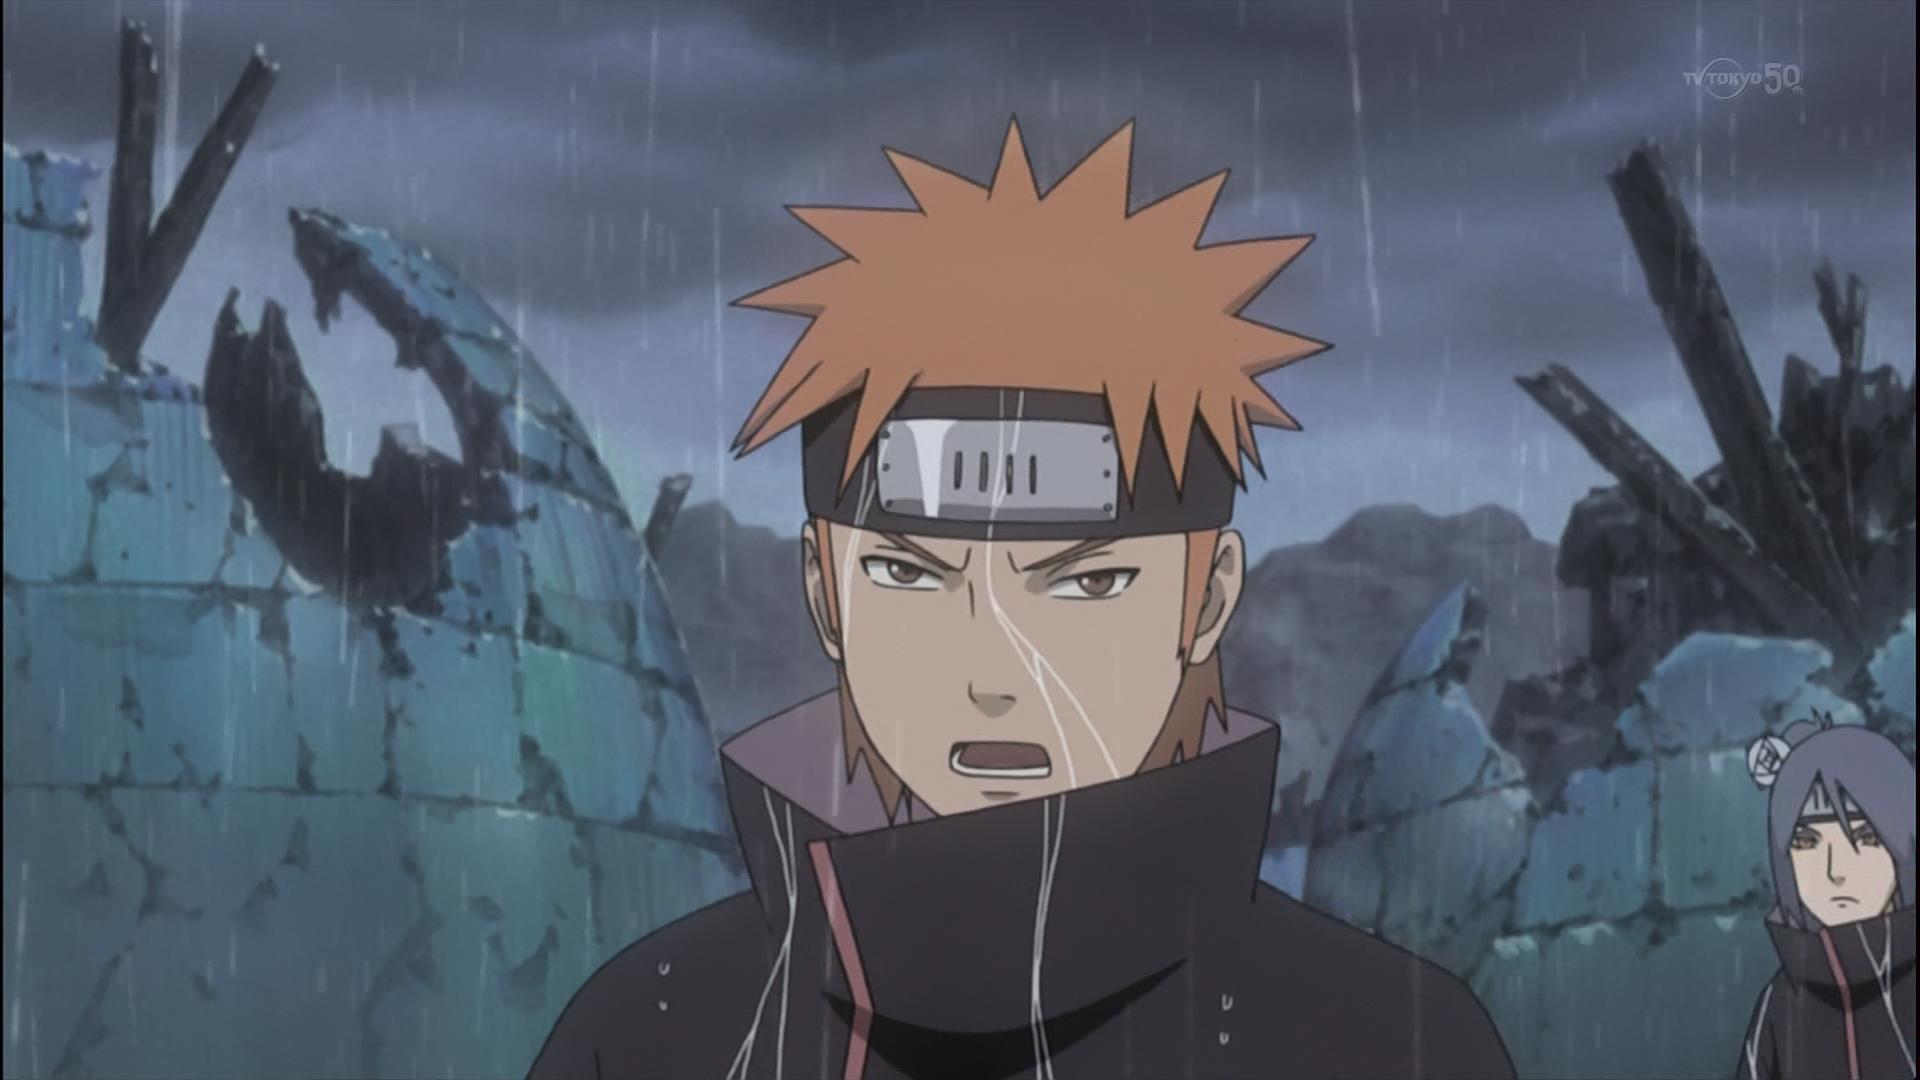 嘲笑のひよこ すすき 本日2月日は Naruto の暁の弥彦の誕生日 おめでとう Naruto ナルト Naruto疾風伝 弥彦生誕祭 弥彦生誕祭15 2月日は弥彦の誕生日 Http T Co Foaxyitb0s Twitter